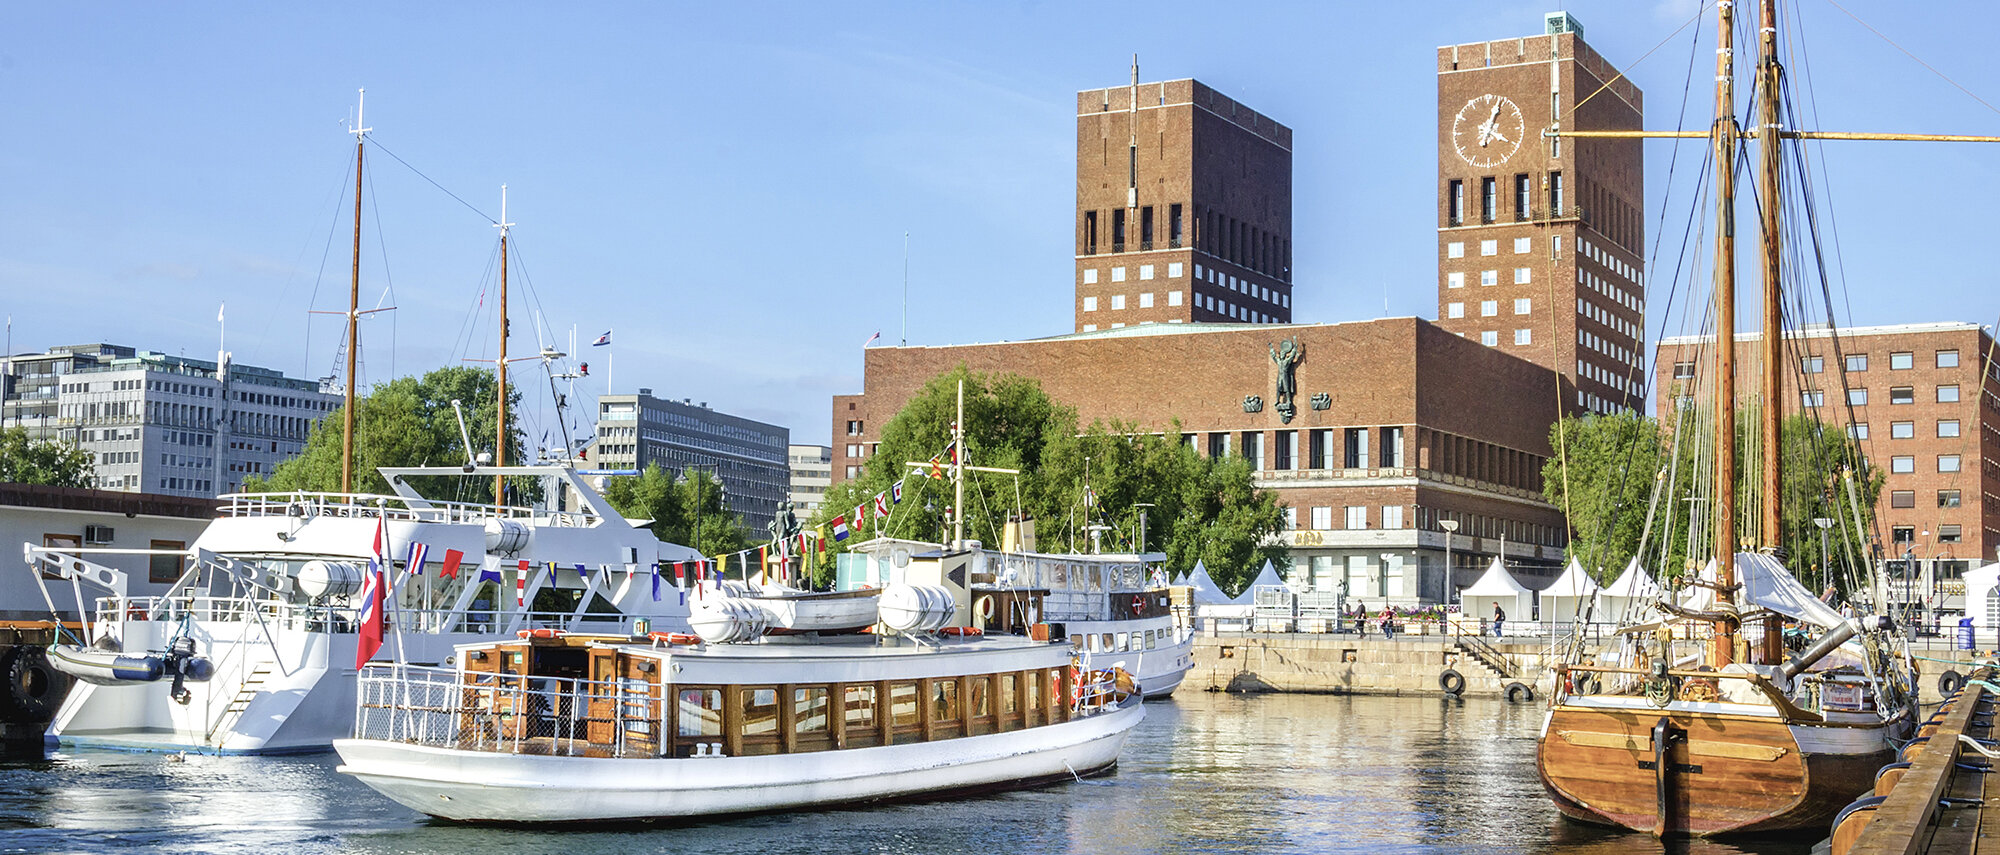 Blick auf Oslos Hafen und Rathaus Oslo im Sommer.